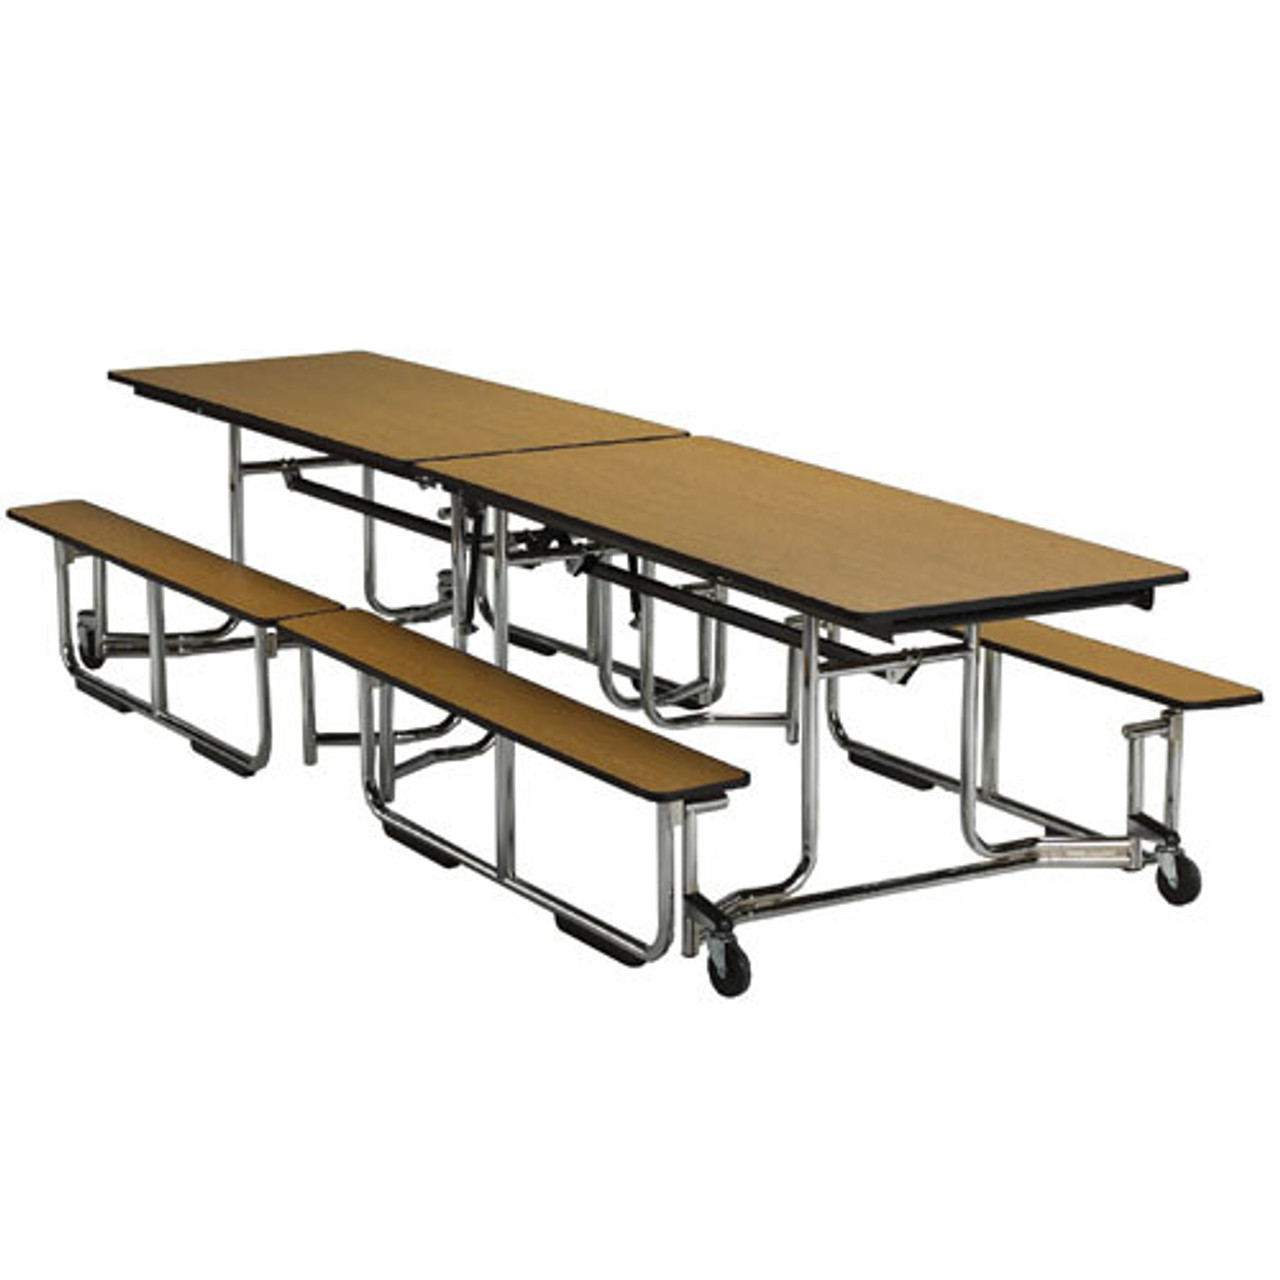 ki-uniframe-rectangular-cafeteria-table-benches-96l-x-56-1-2w-chrome-frame/